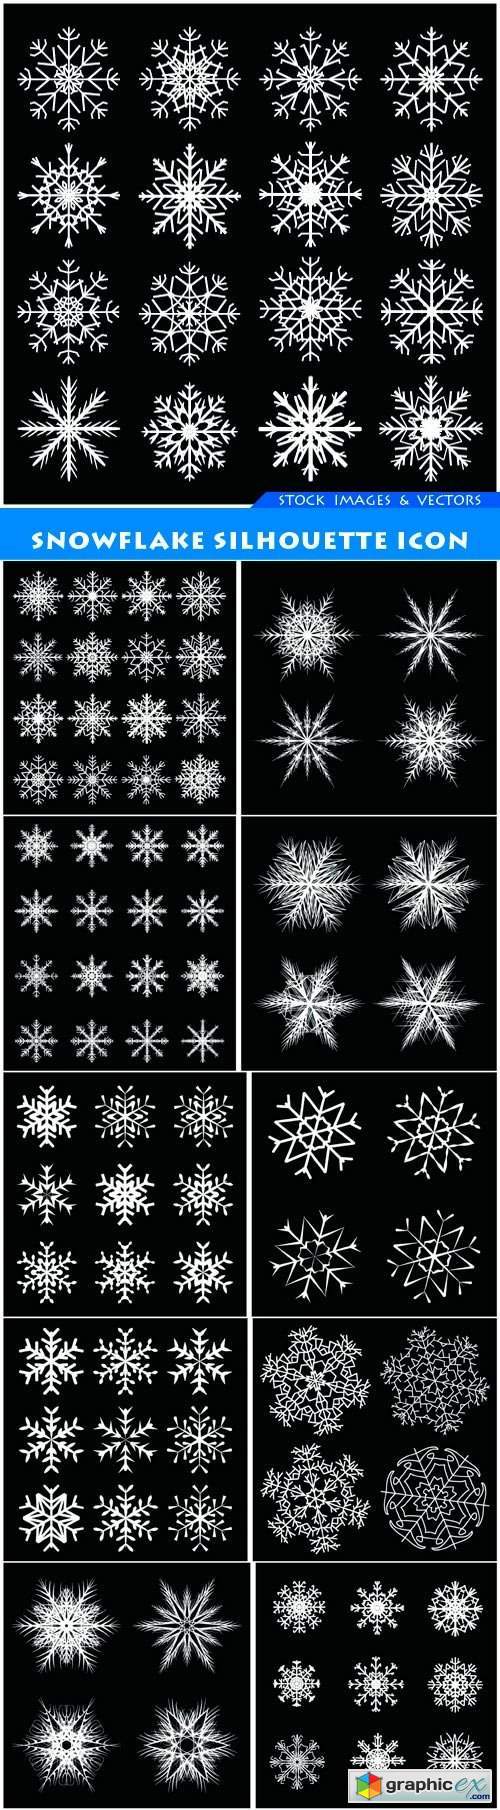 Snowflake silhouette icon 11X EPS